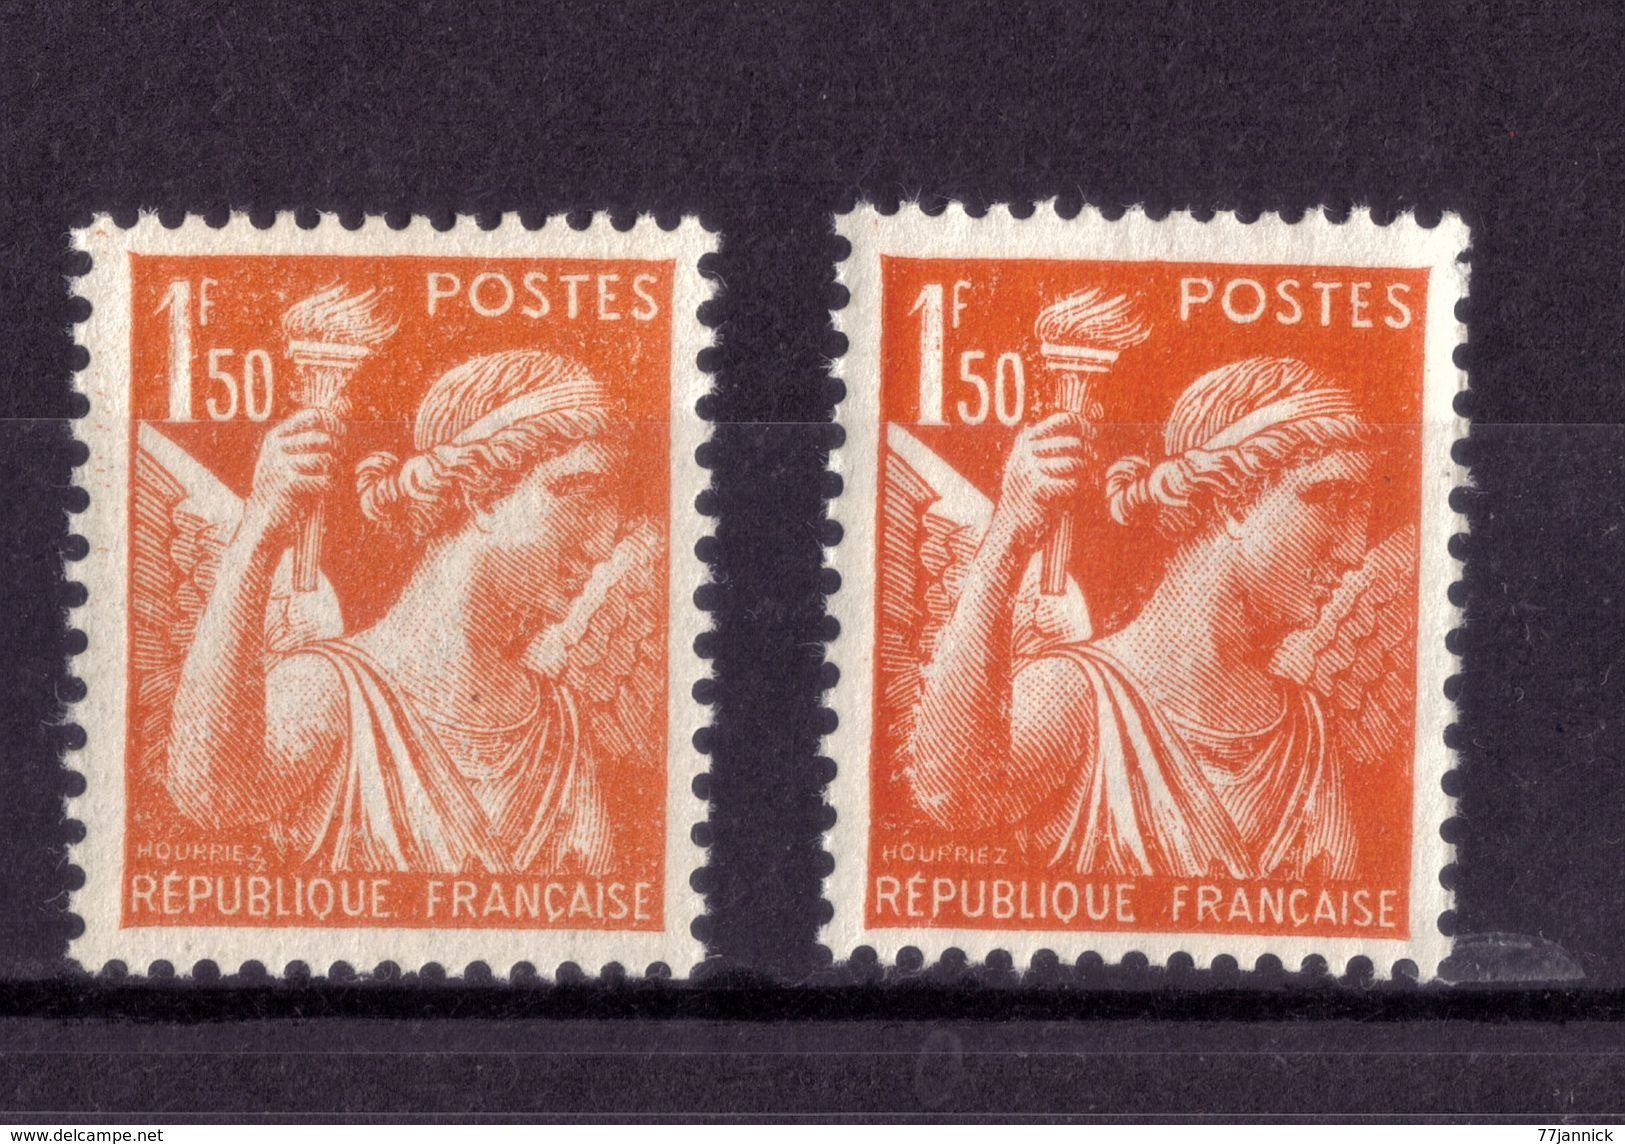 VARIETE DE COULEUR N° 435 ( Clair Et Fonçé )   NEUF** - Unused Stamps